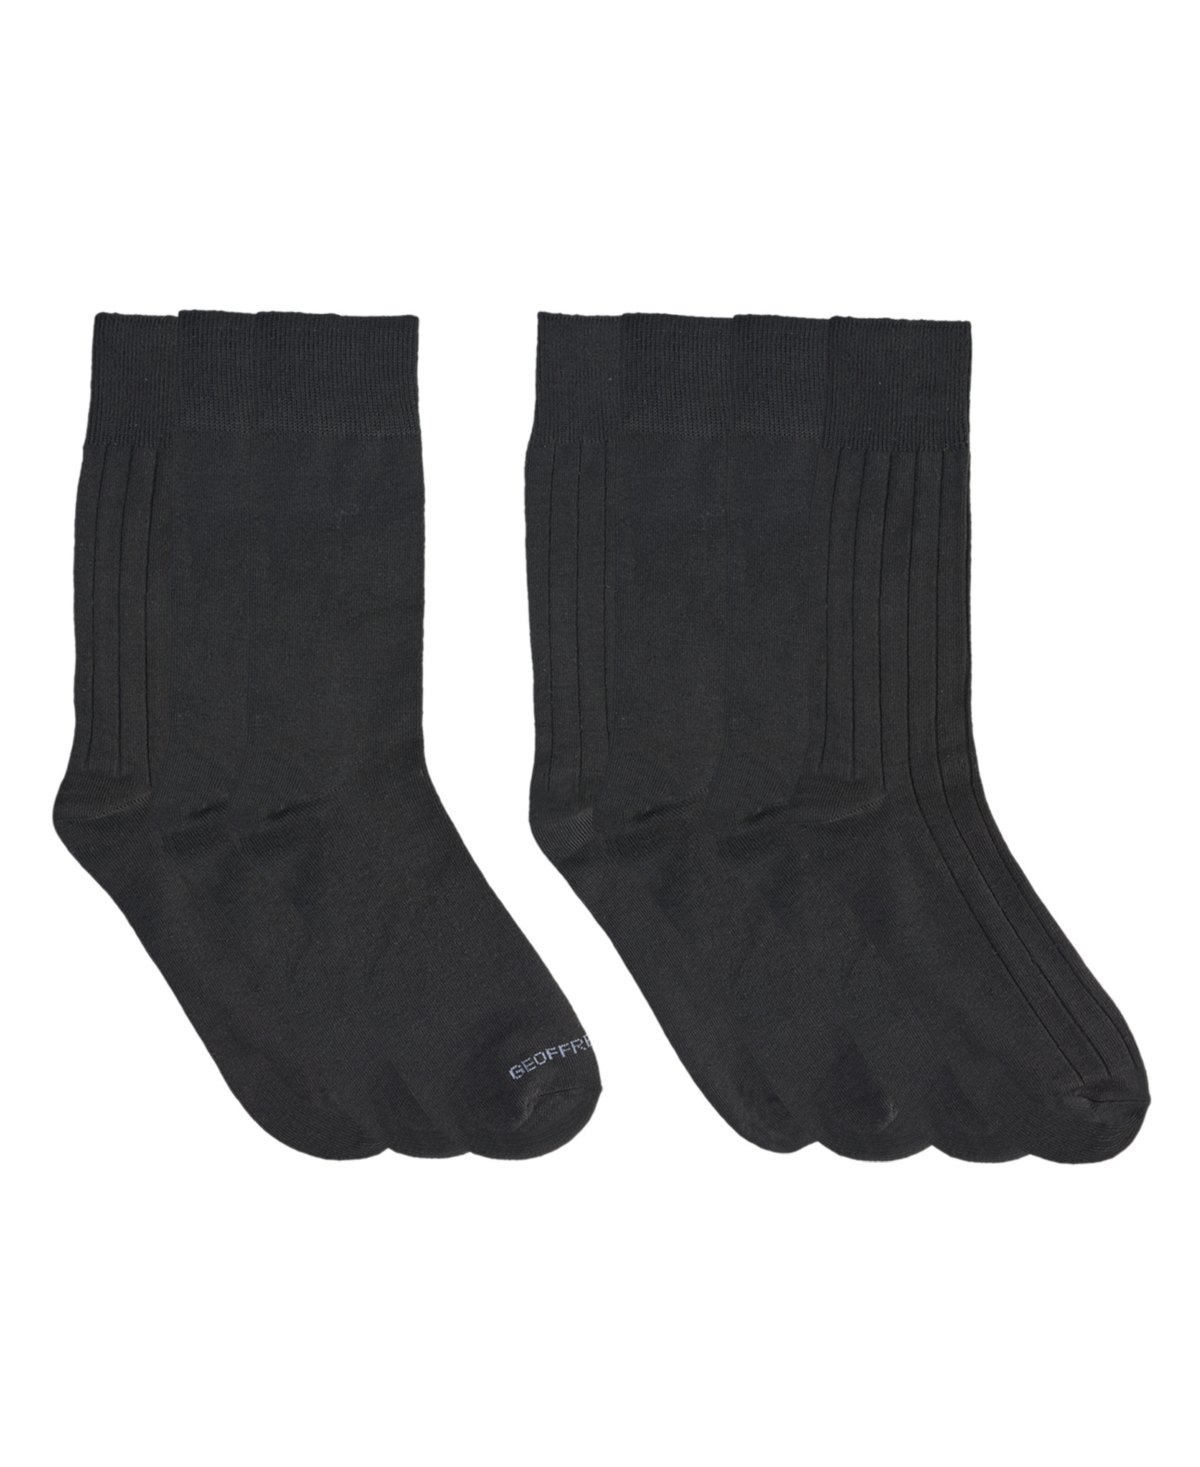 Men's Dress Crew Socks, Pack of 7 - Black